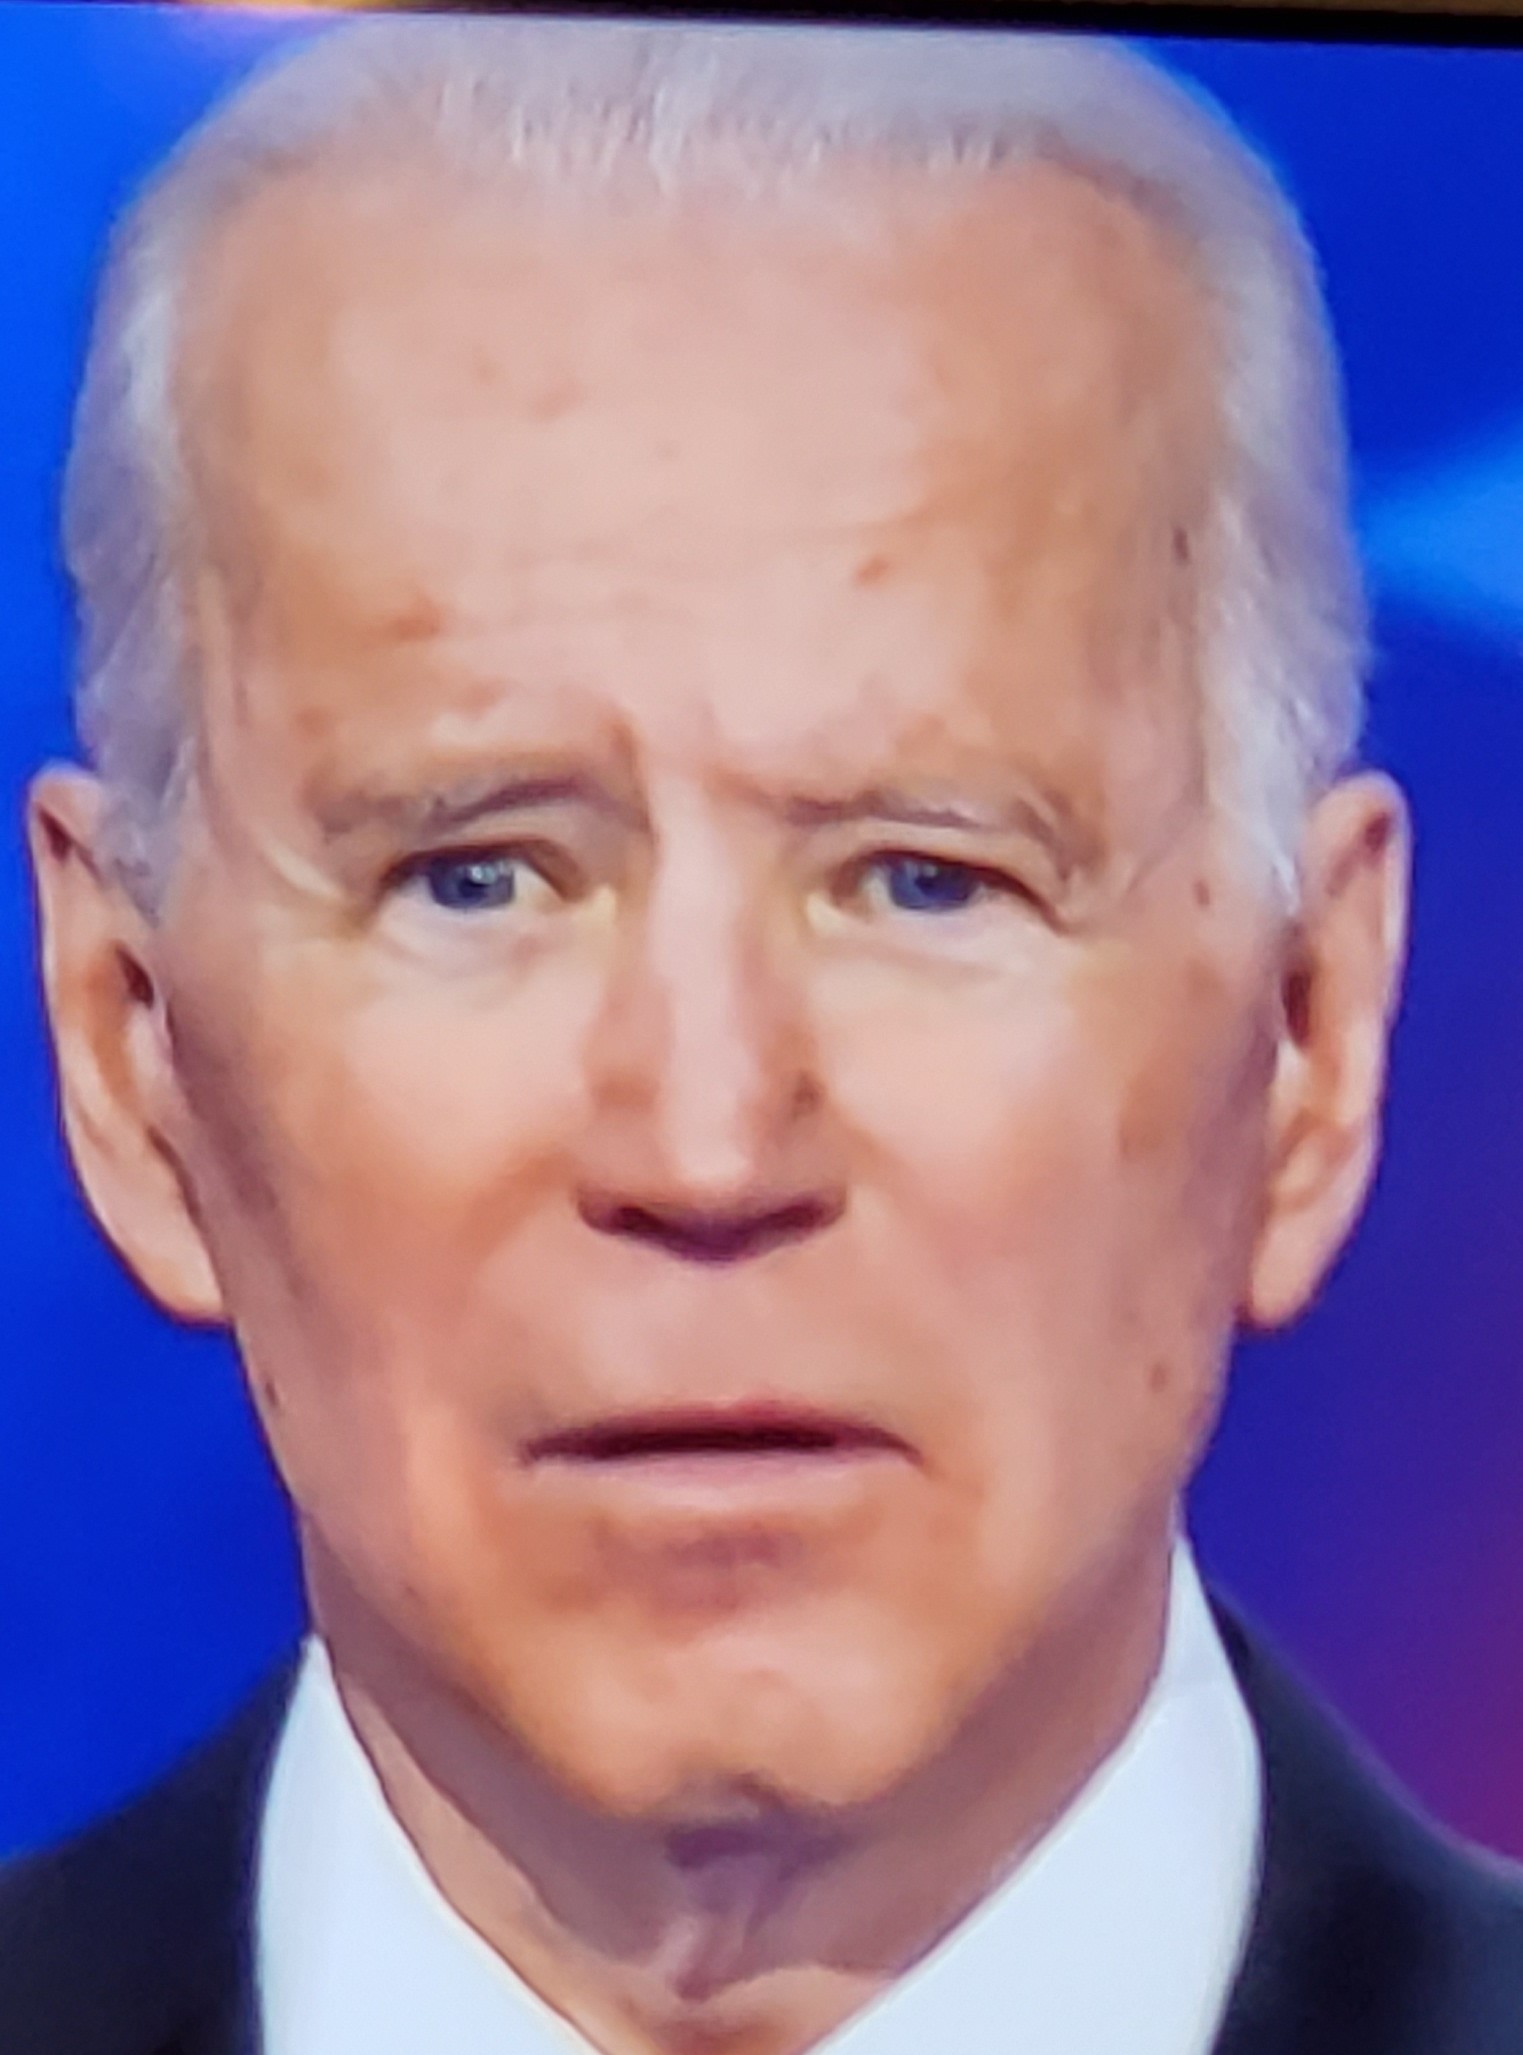 Joe Biden Eye Blank Meme Template